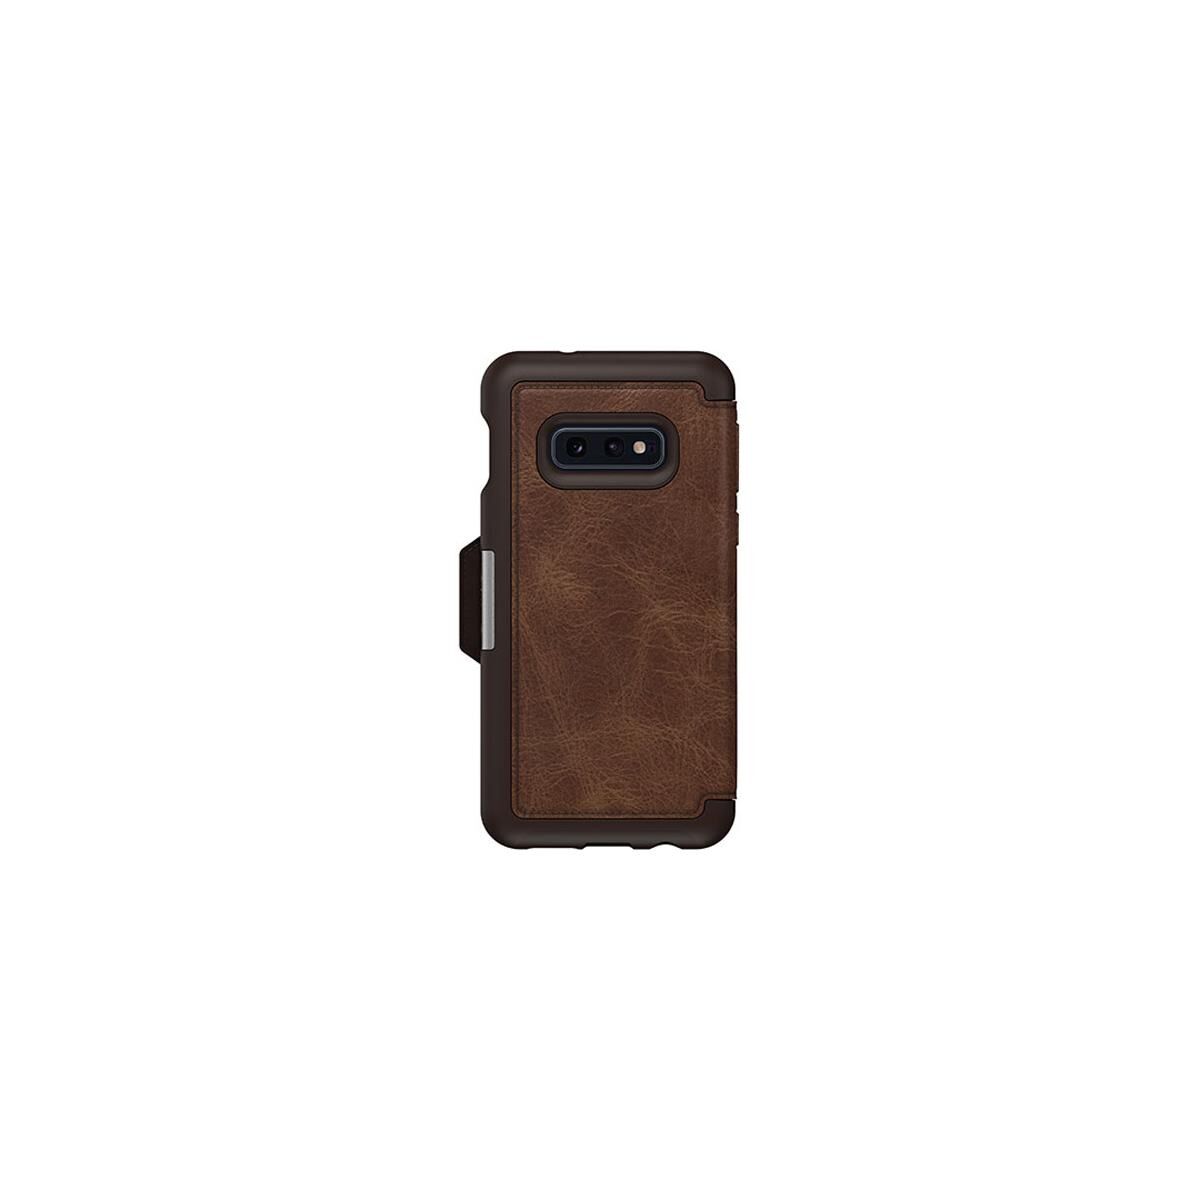 OtterBox Strada Folio Case for Samsung Galaxy S10e Smartphone, Espresso Brown